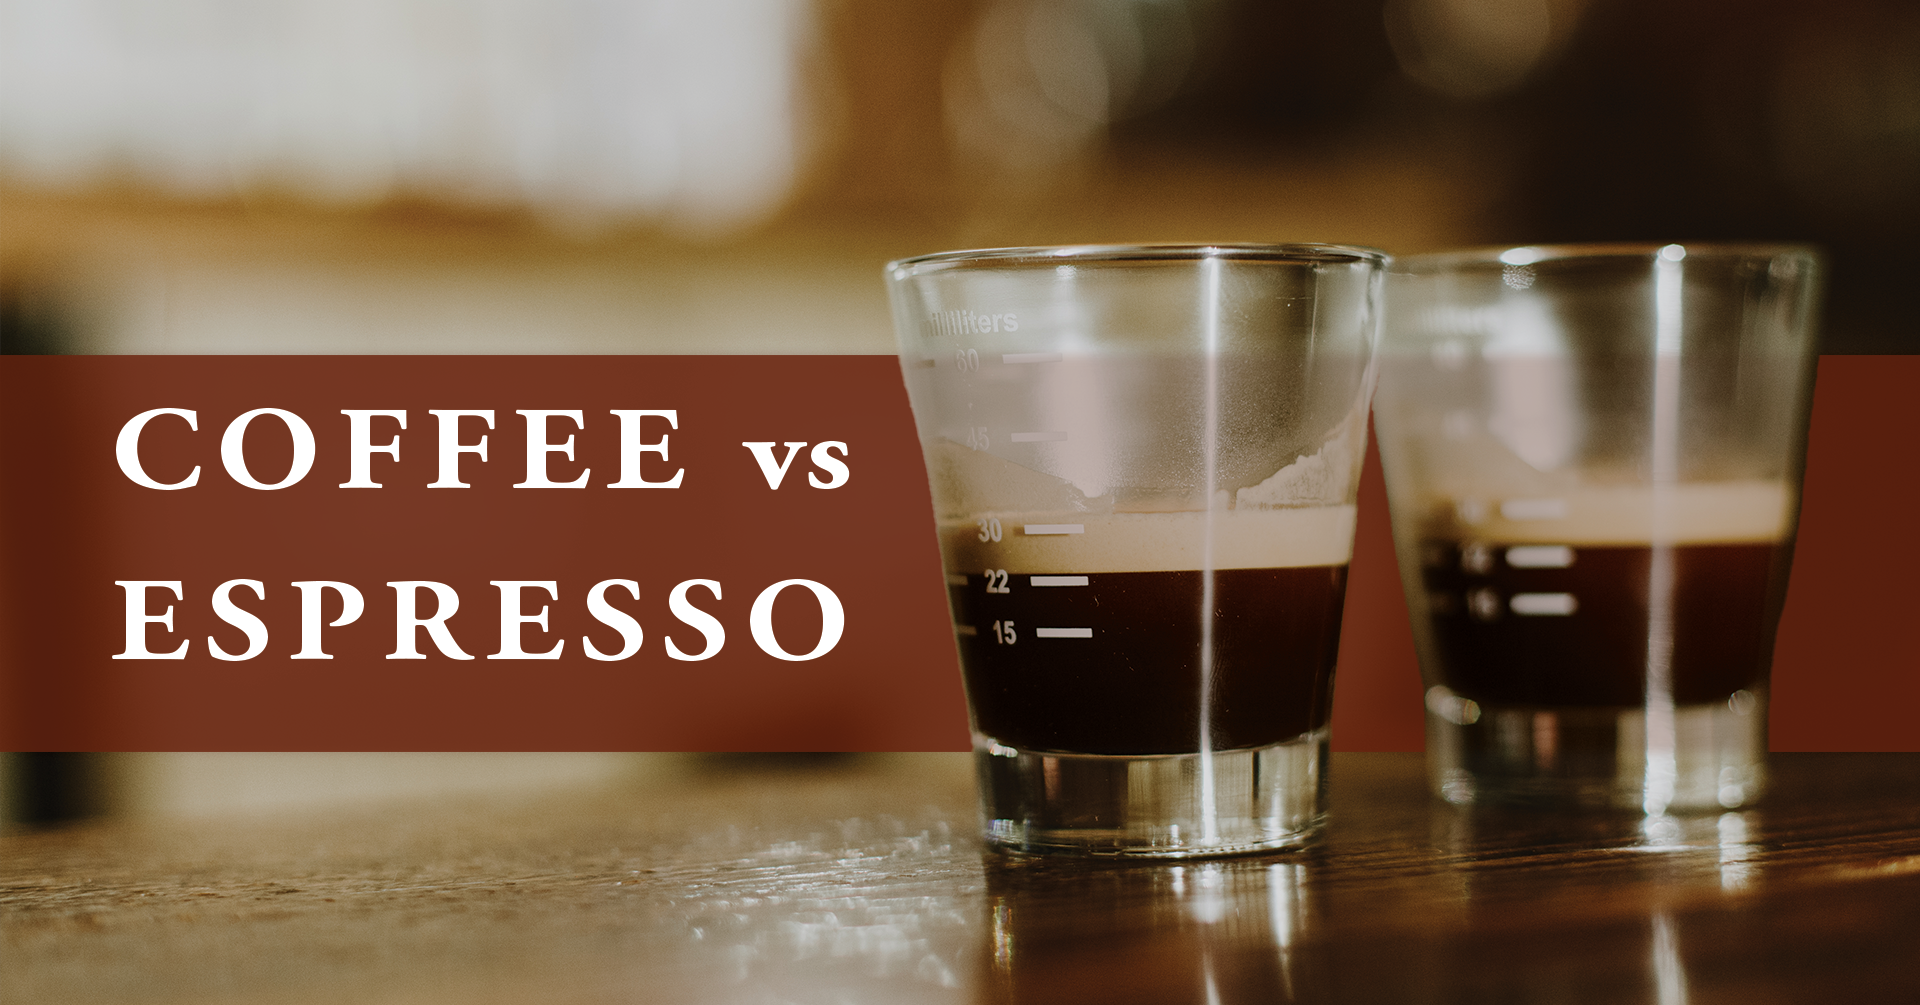 Coffee vs Espresso